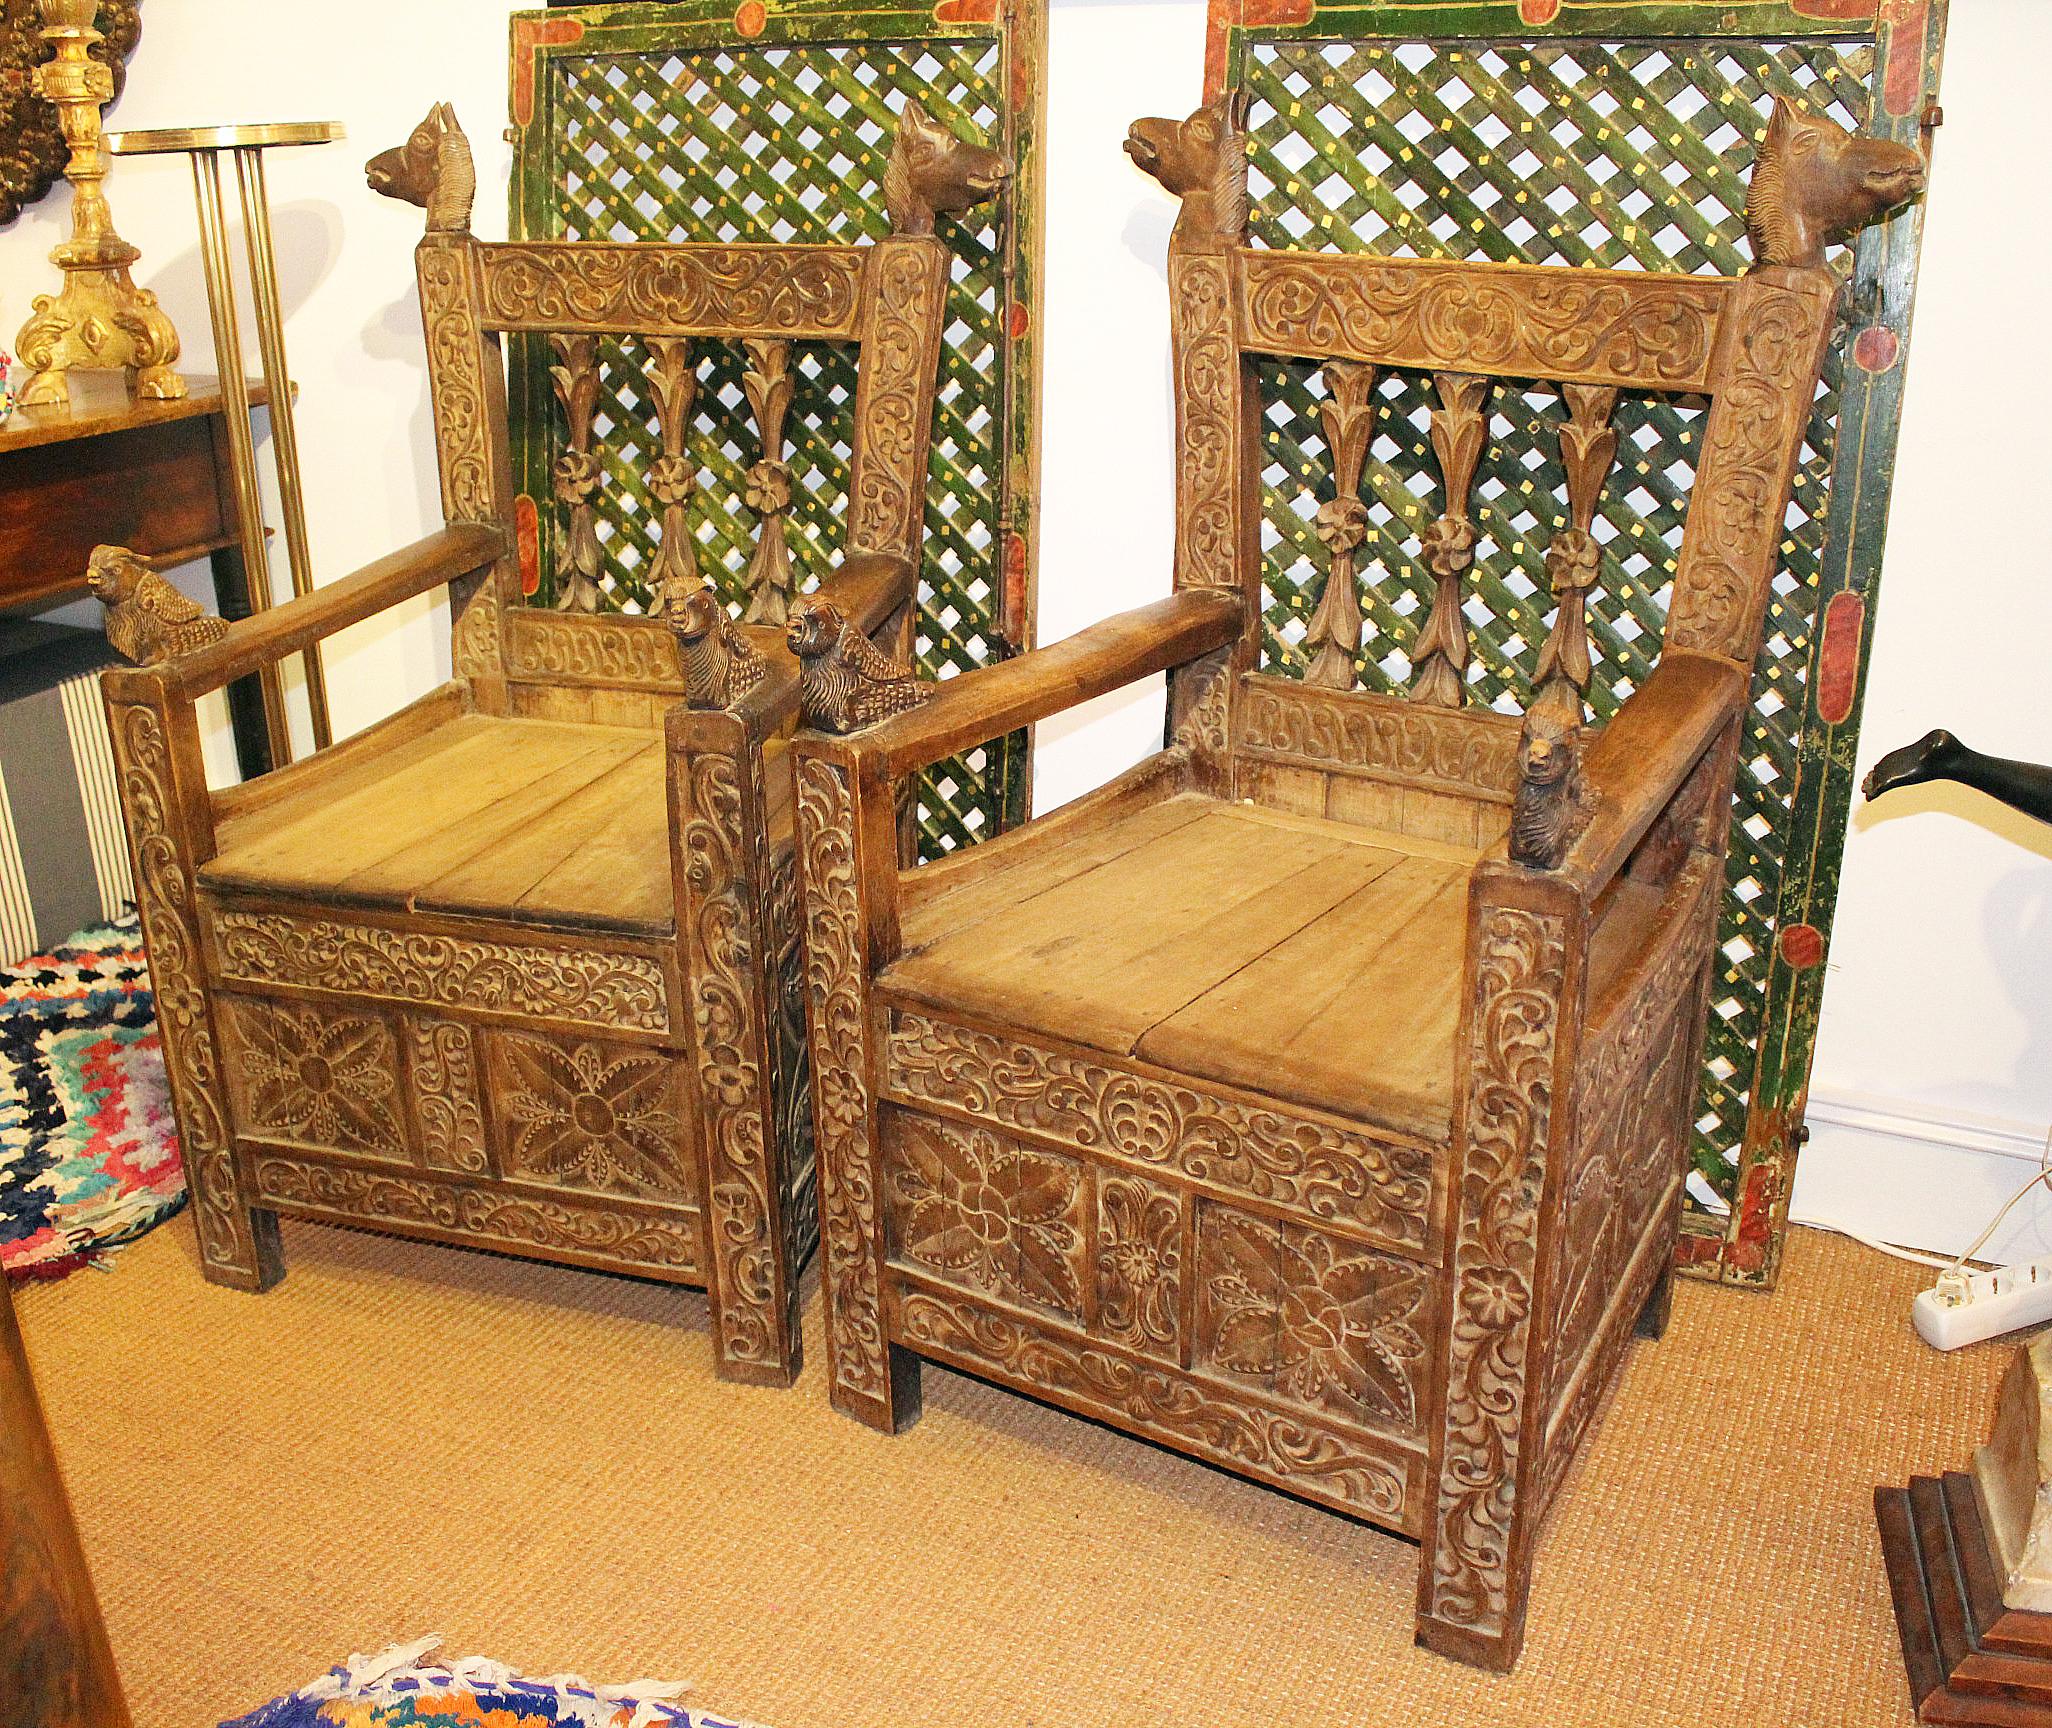 paire de fauteuils boliviens en bois sculpté à la main, datant du 19e siècle, décorés de motifs géométriques et d'animaux sur les bras et le dossier.